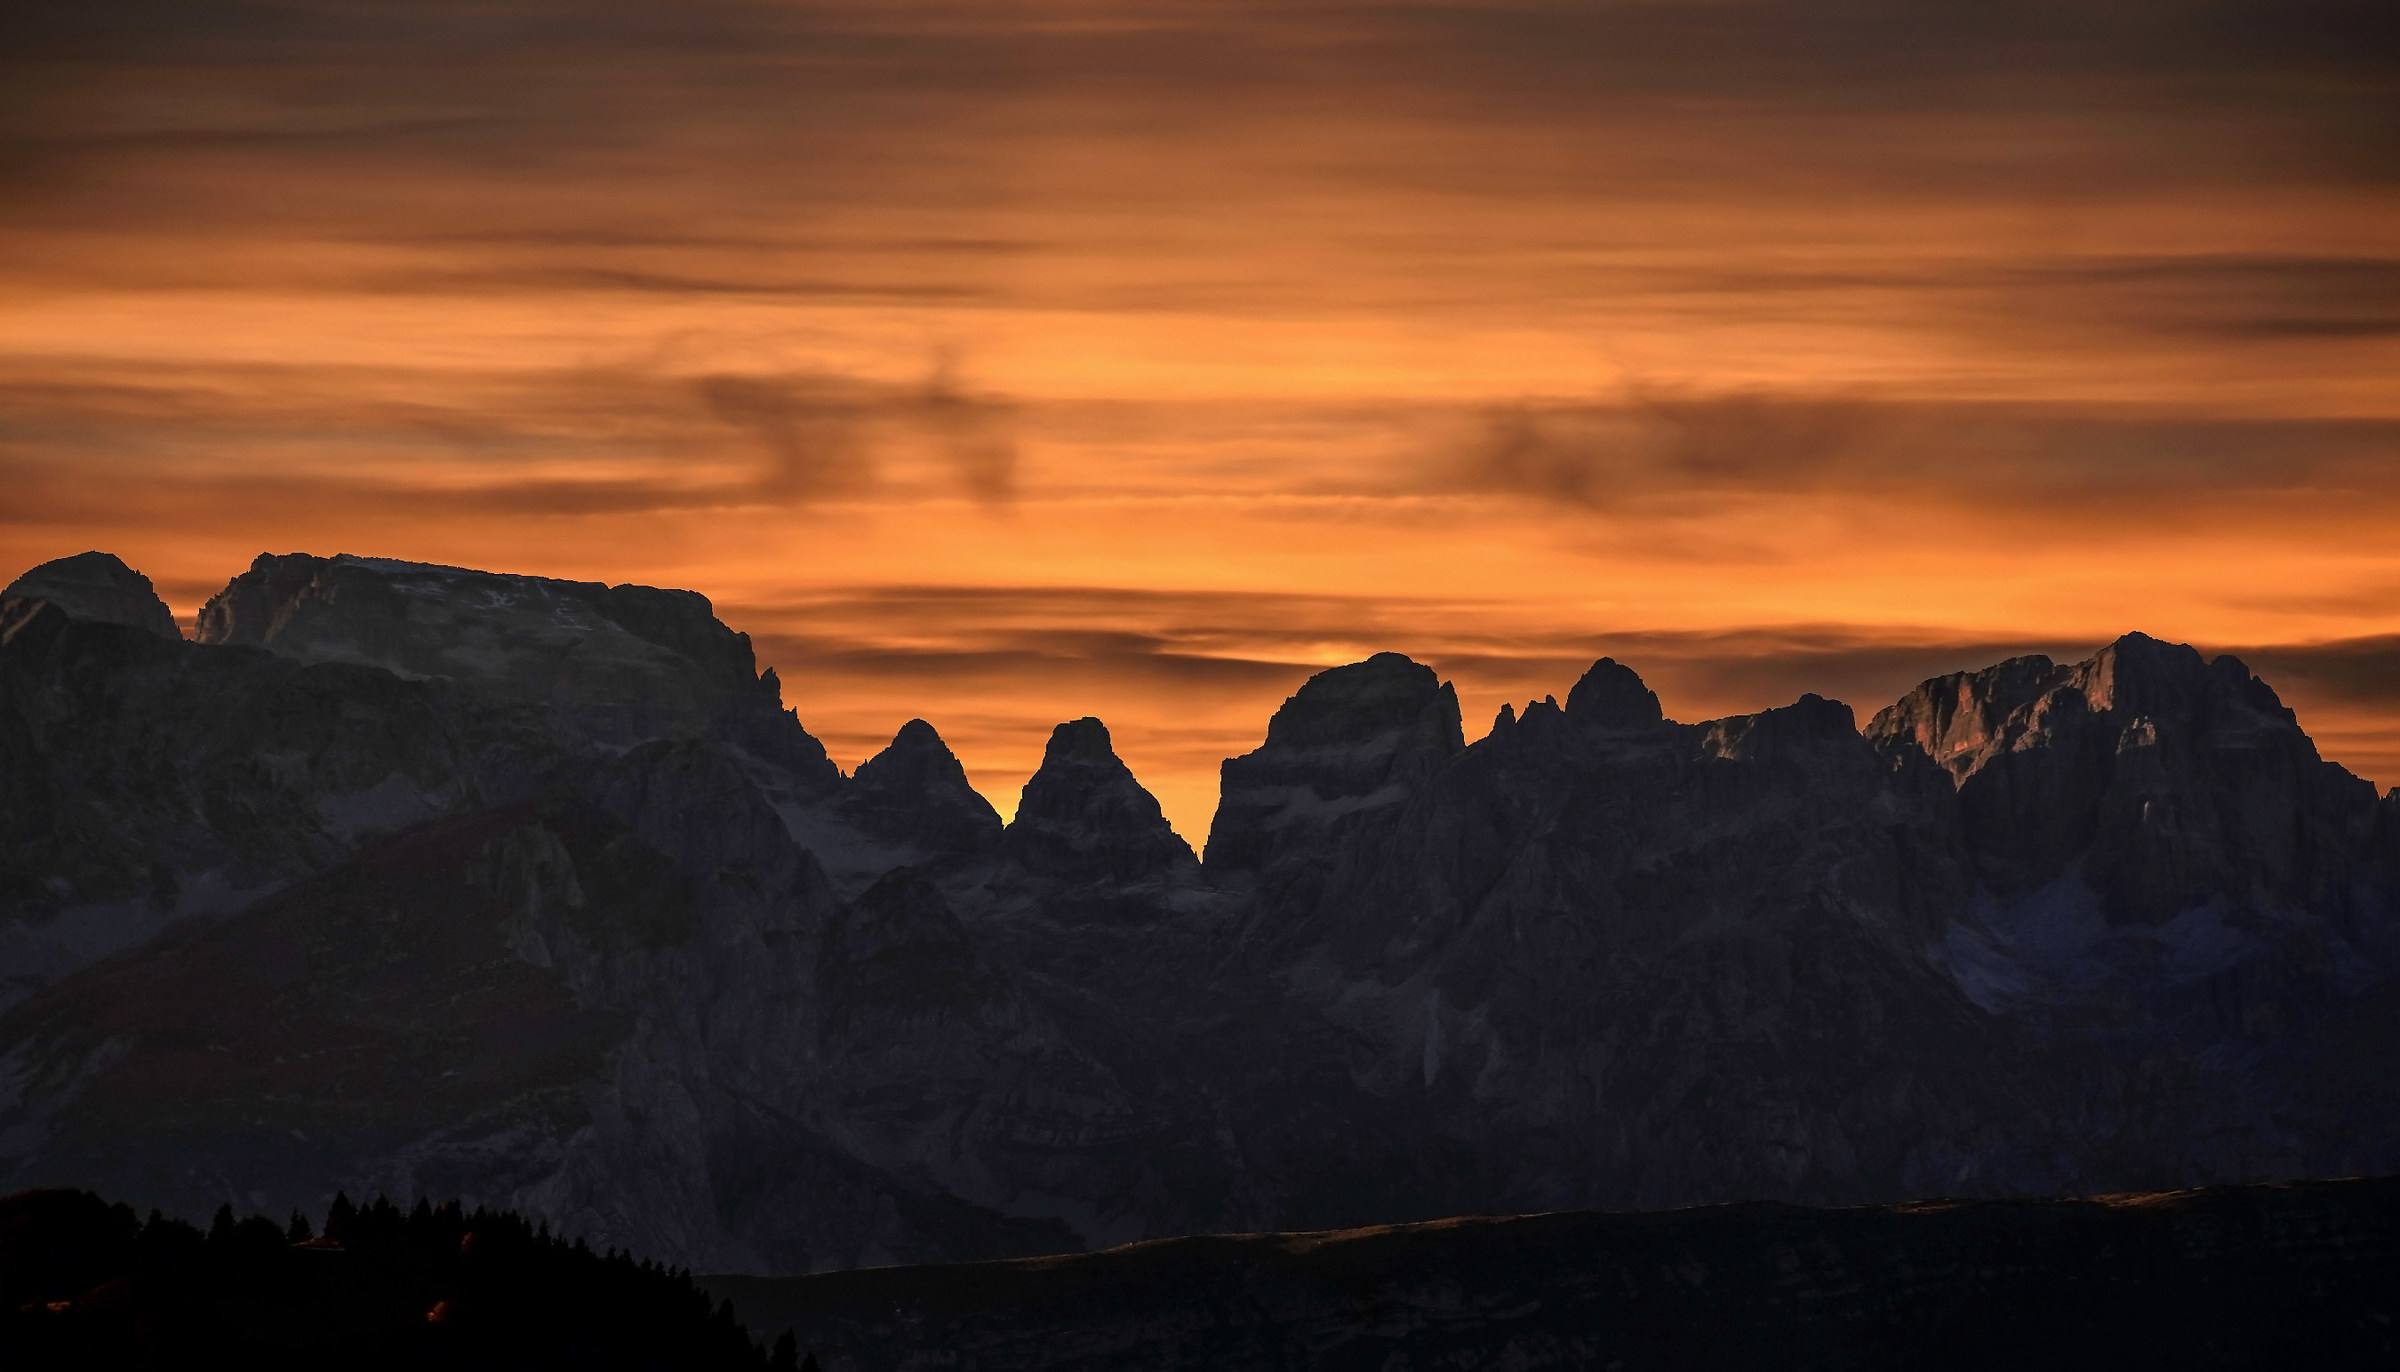 The Brenta Dolomites in Silhouette...